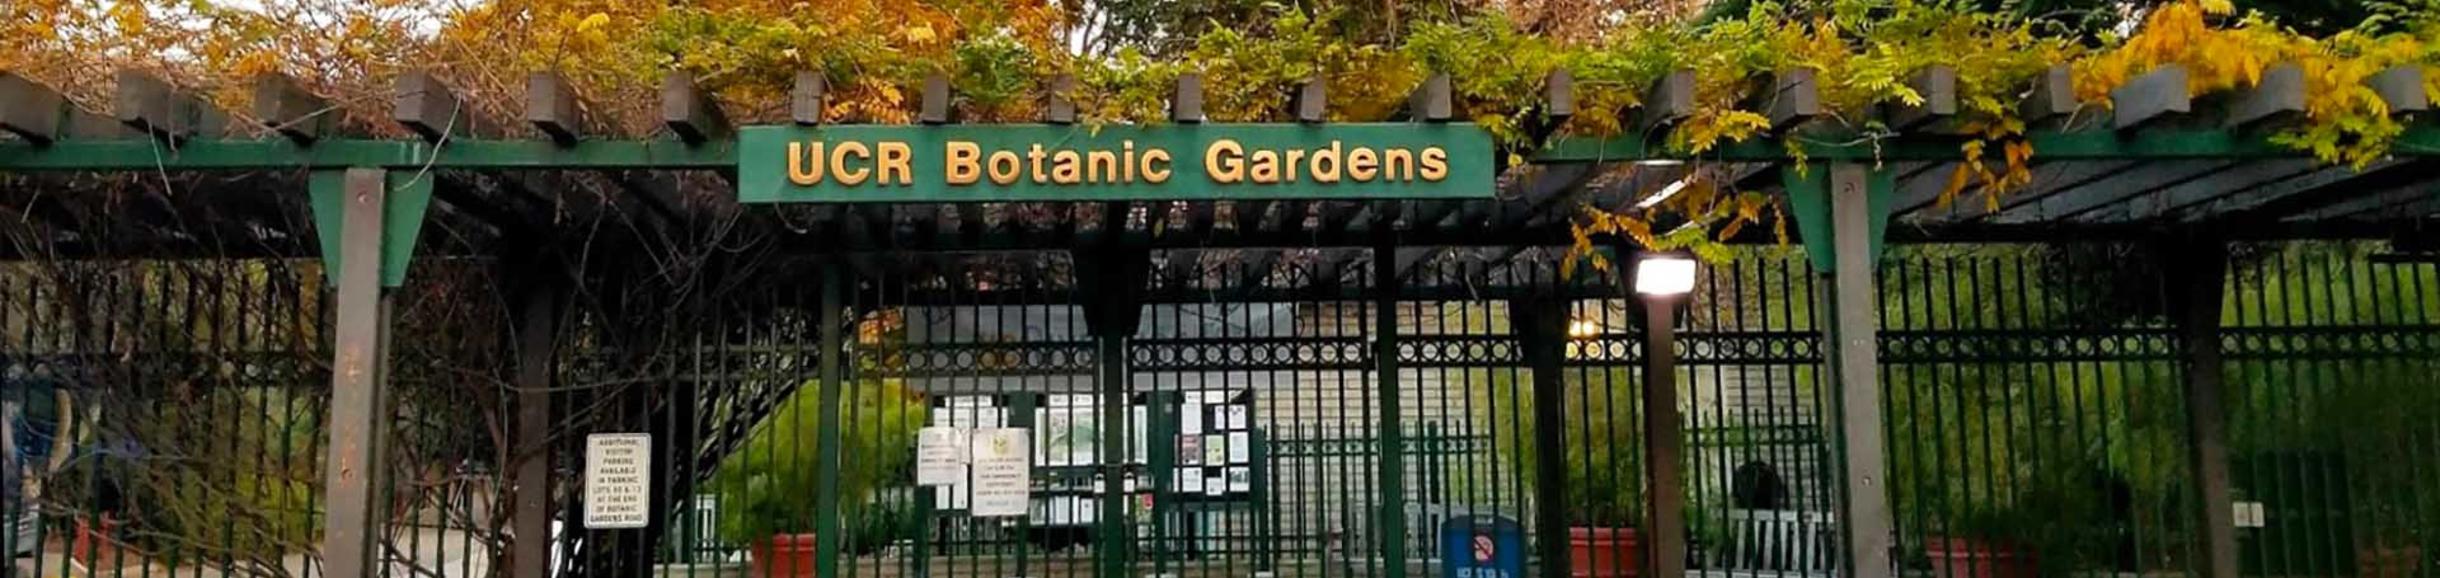 UCR Botanic Gardens entrance